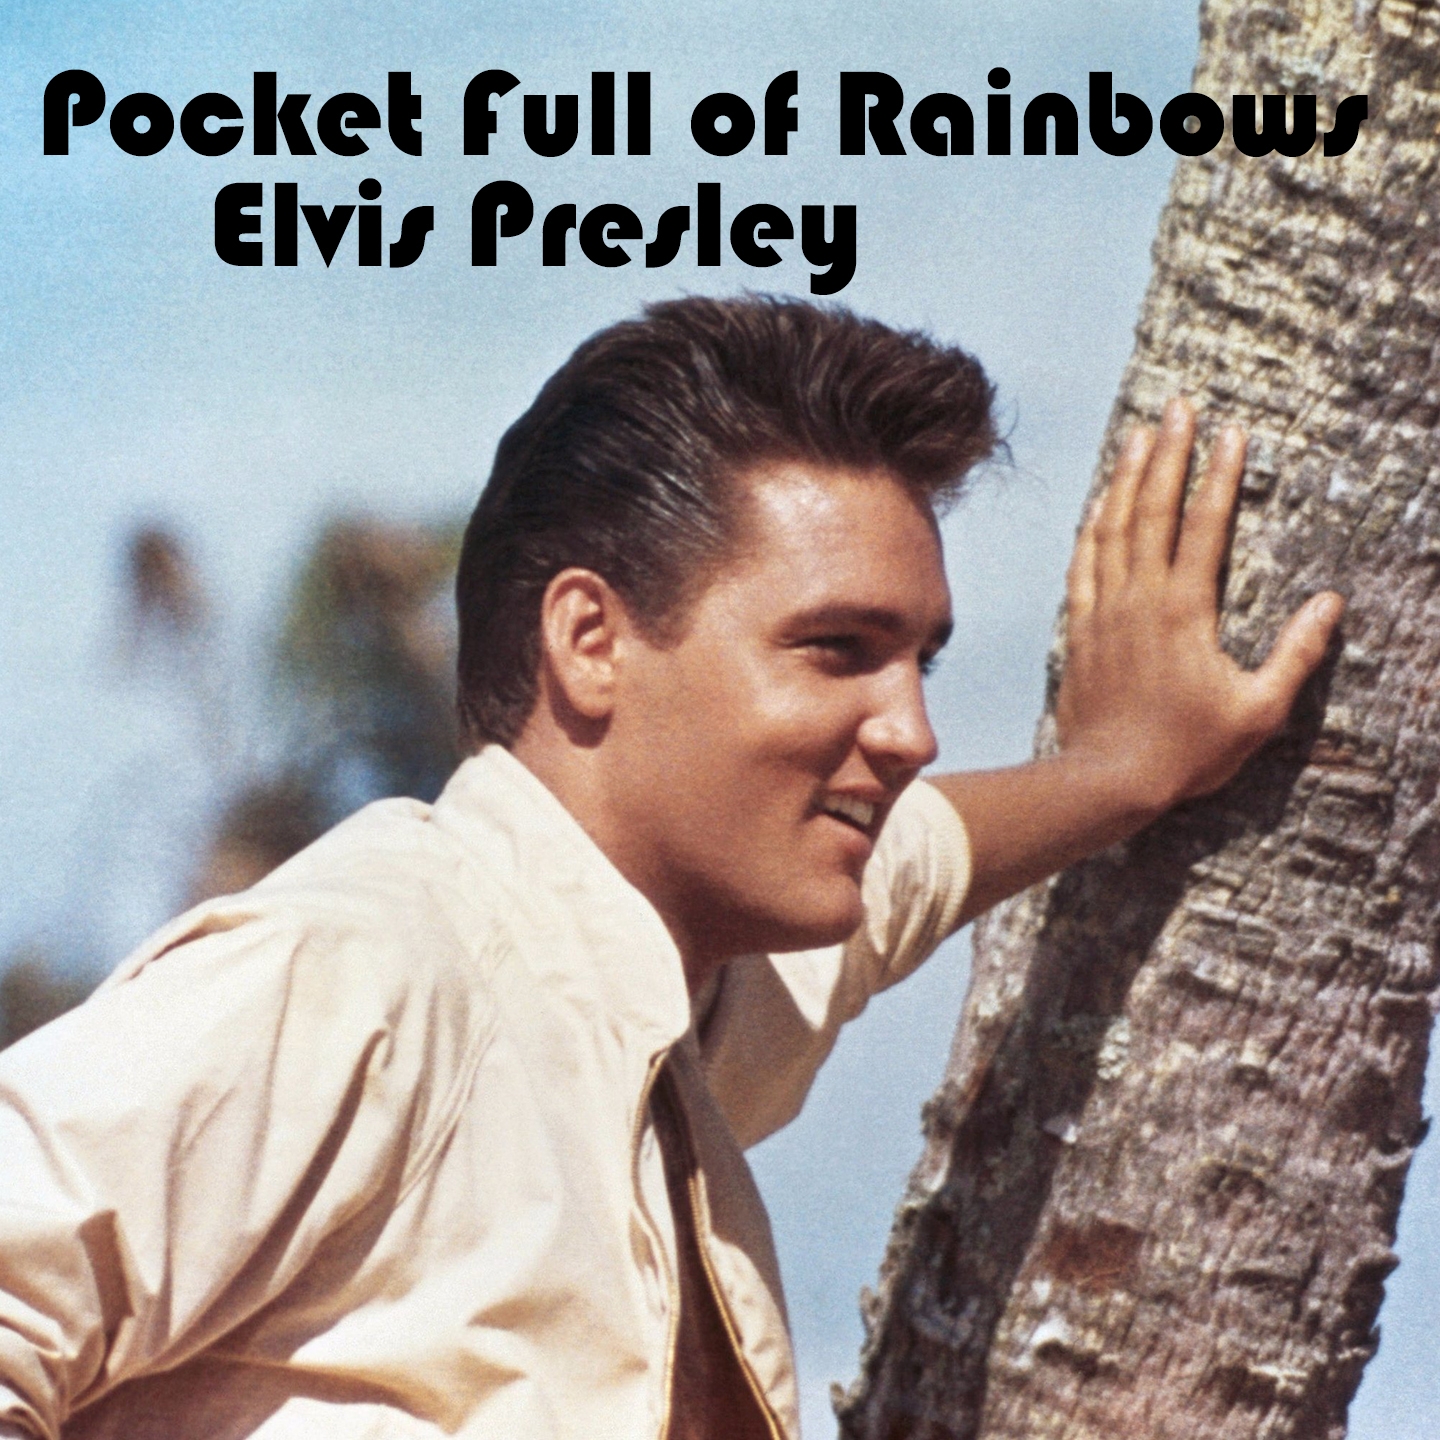 Pocket Full of Rainbows